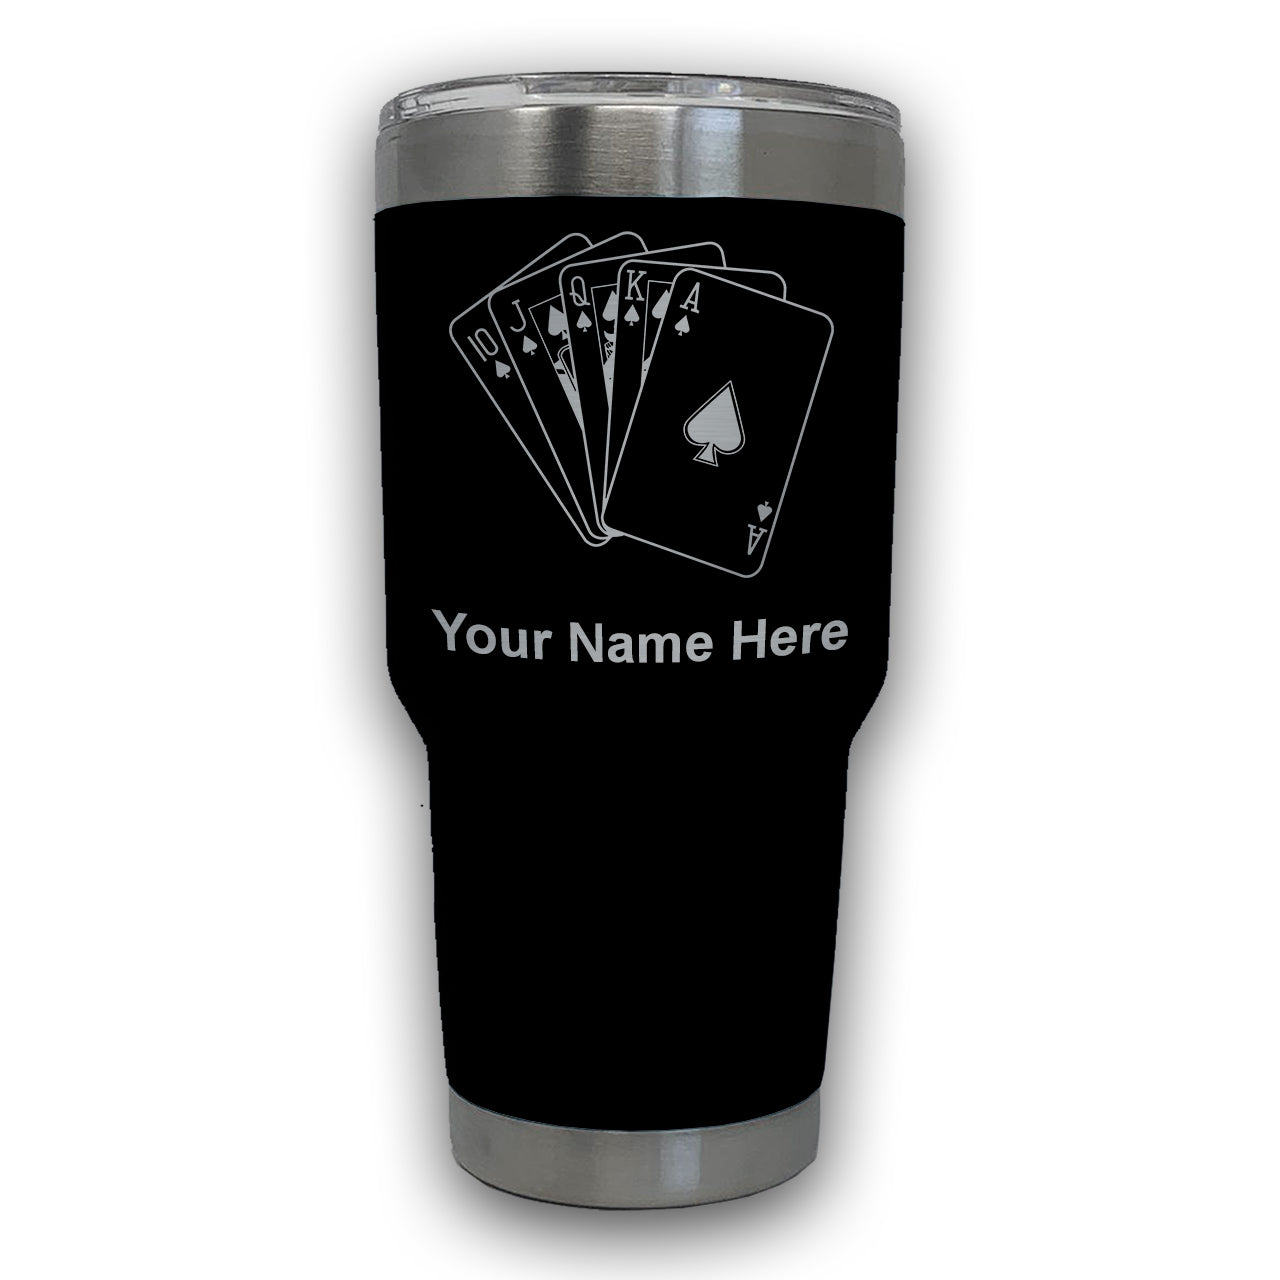 LaserGram 30oz Tumbler Mug, Royal Flush Poker Cards, Personalized Engraving Included